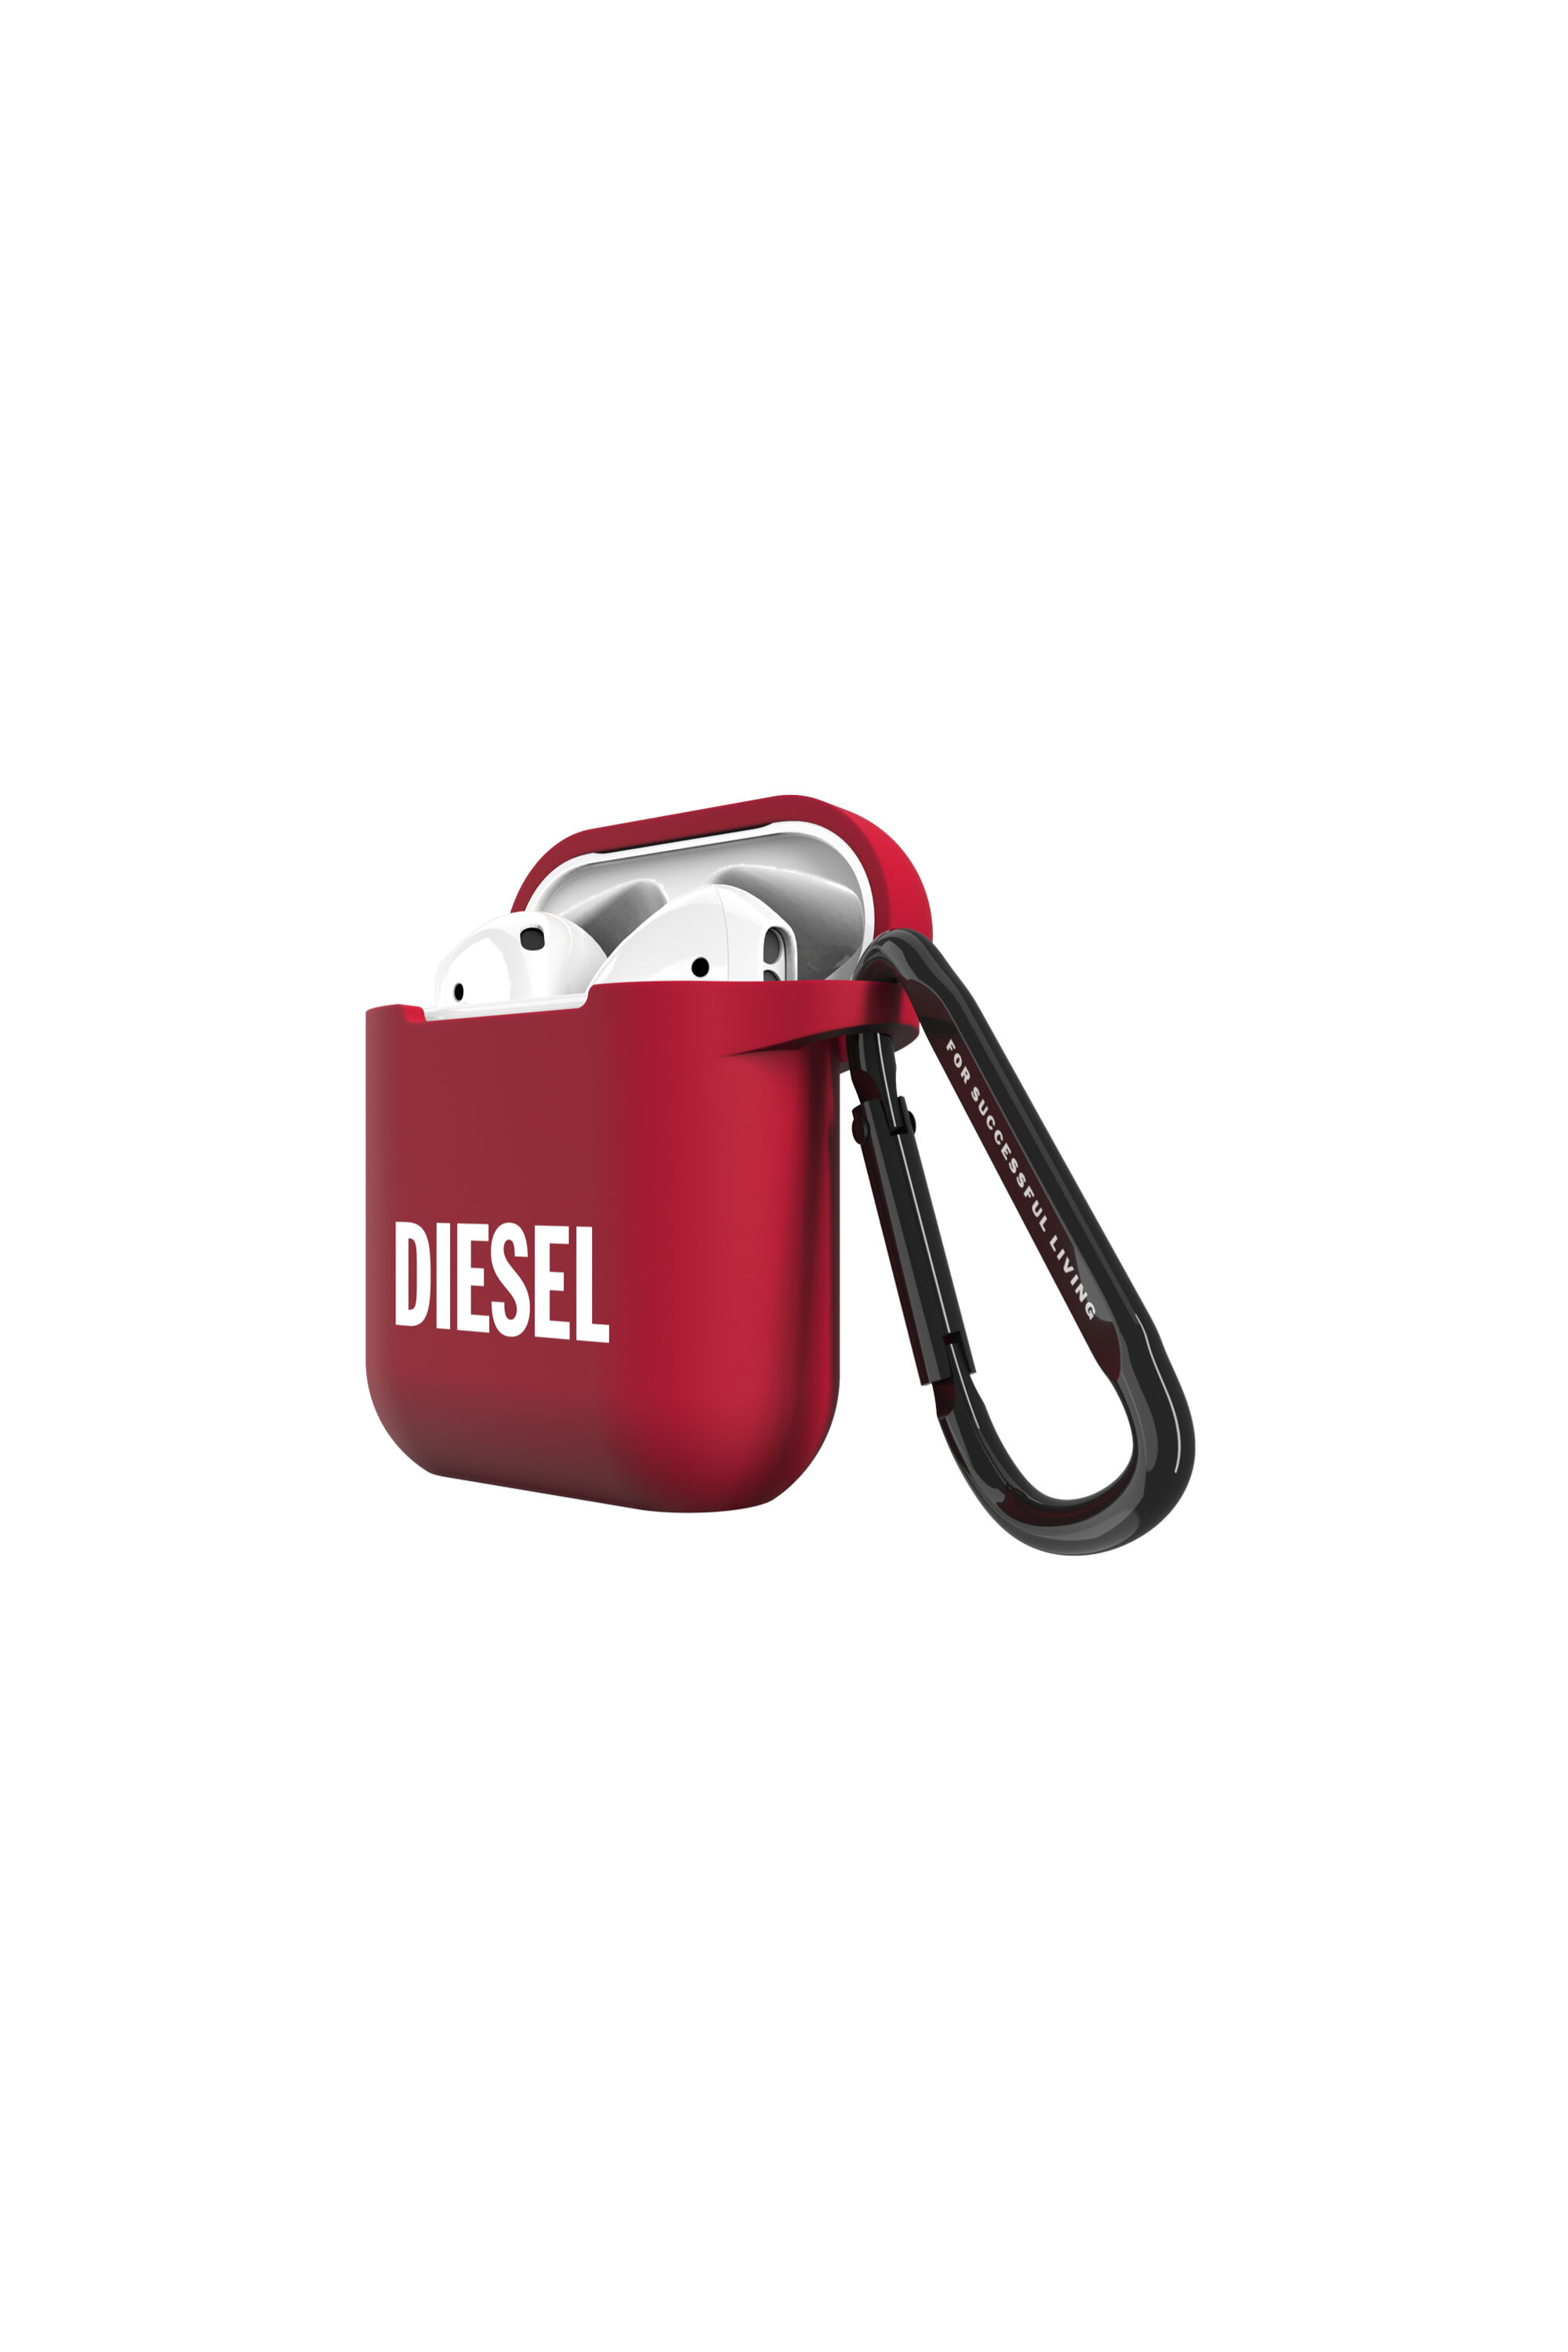 Diesel - 45832 AIRPOD CASE,  - Image 3